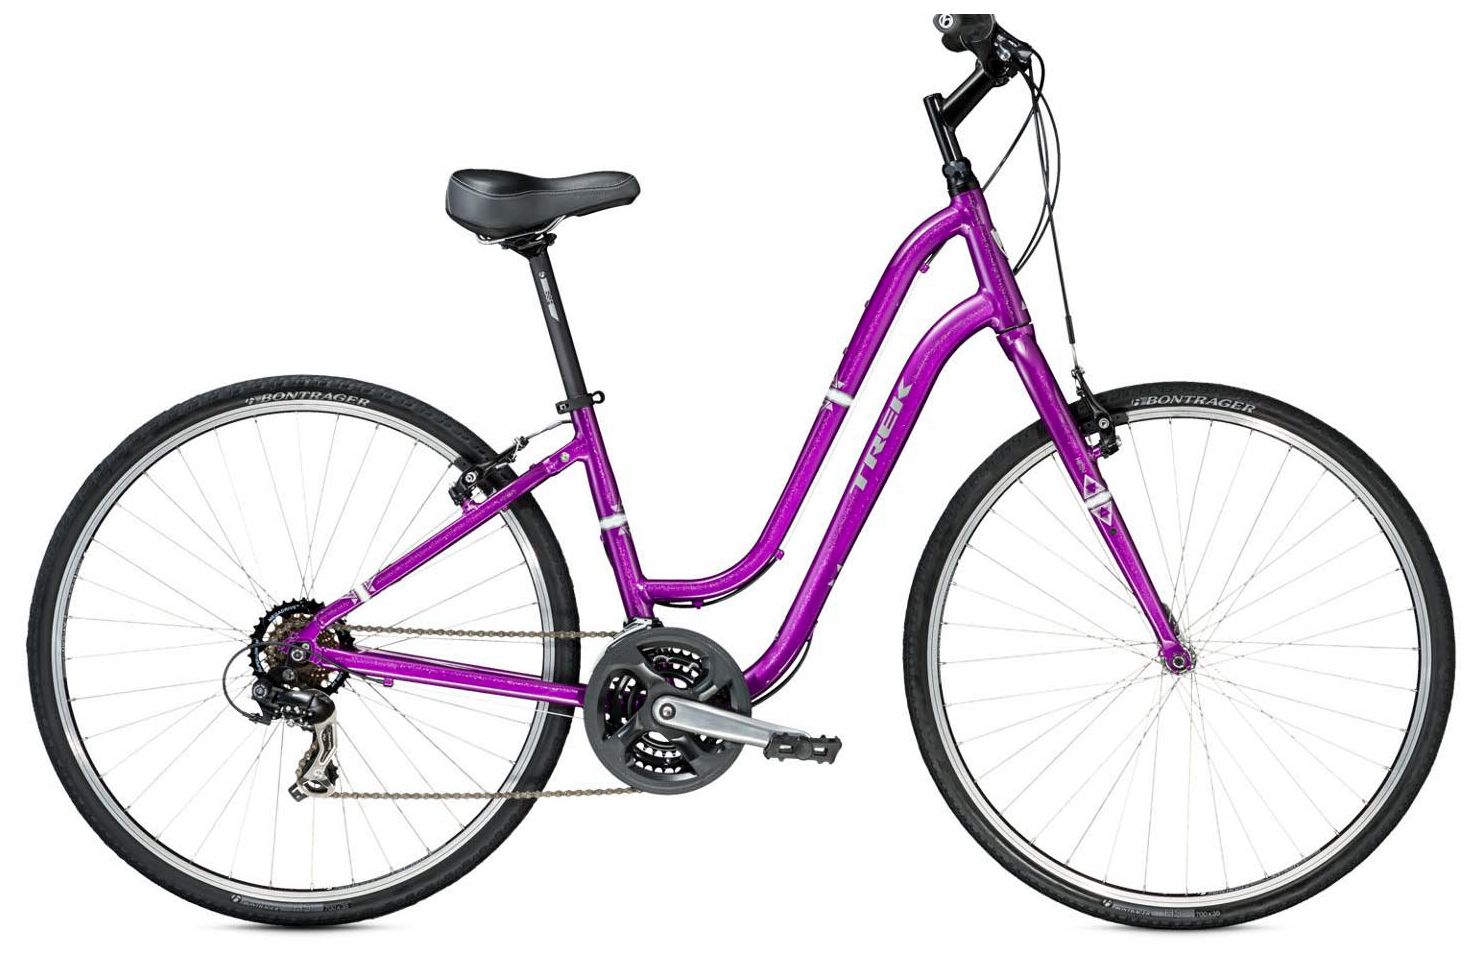  Отзывы о Женском велосипеде Trek Verve 1 WSD 2014